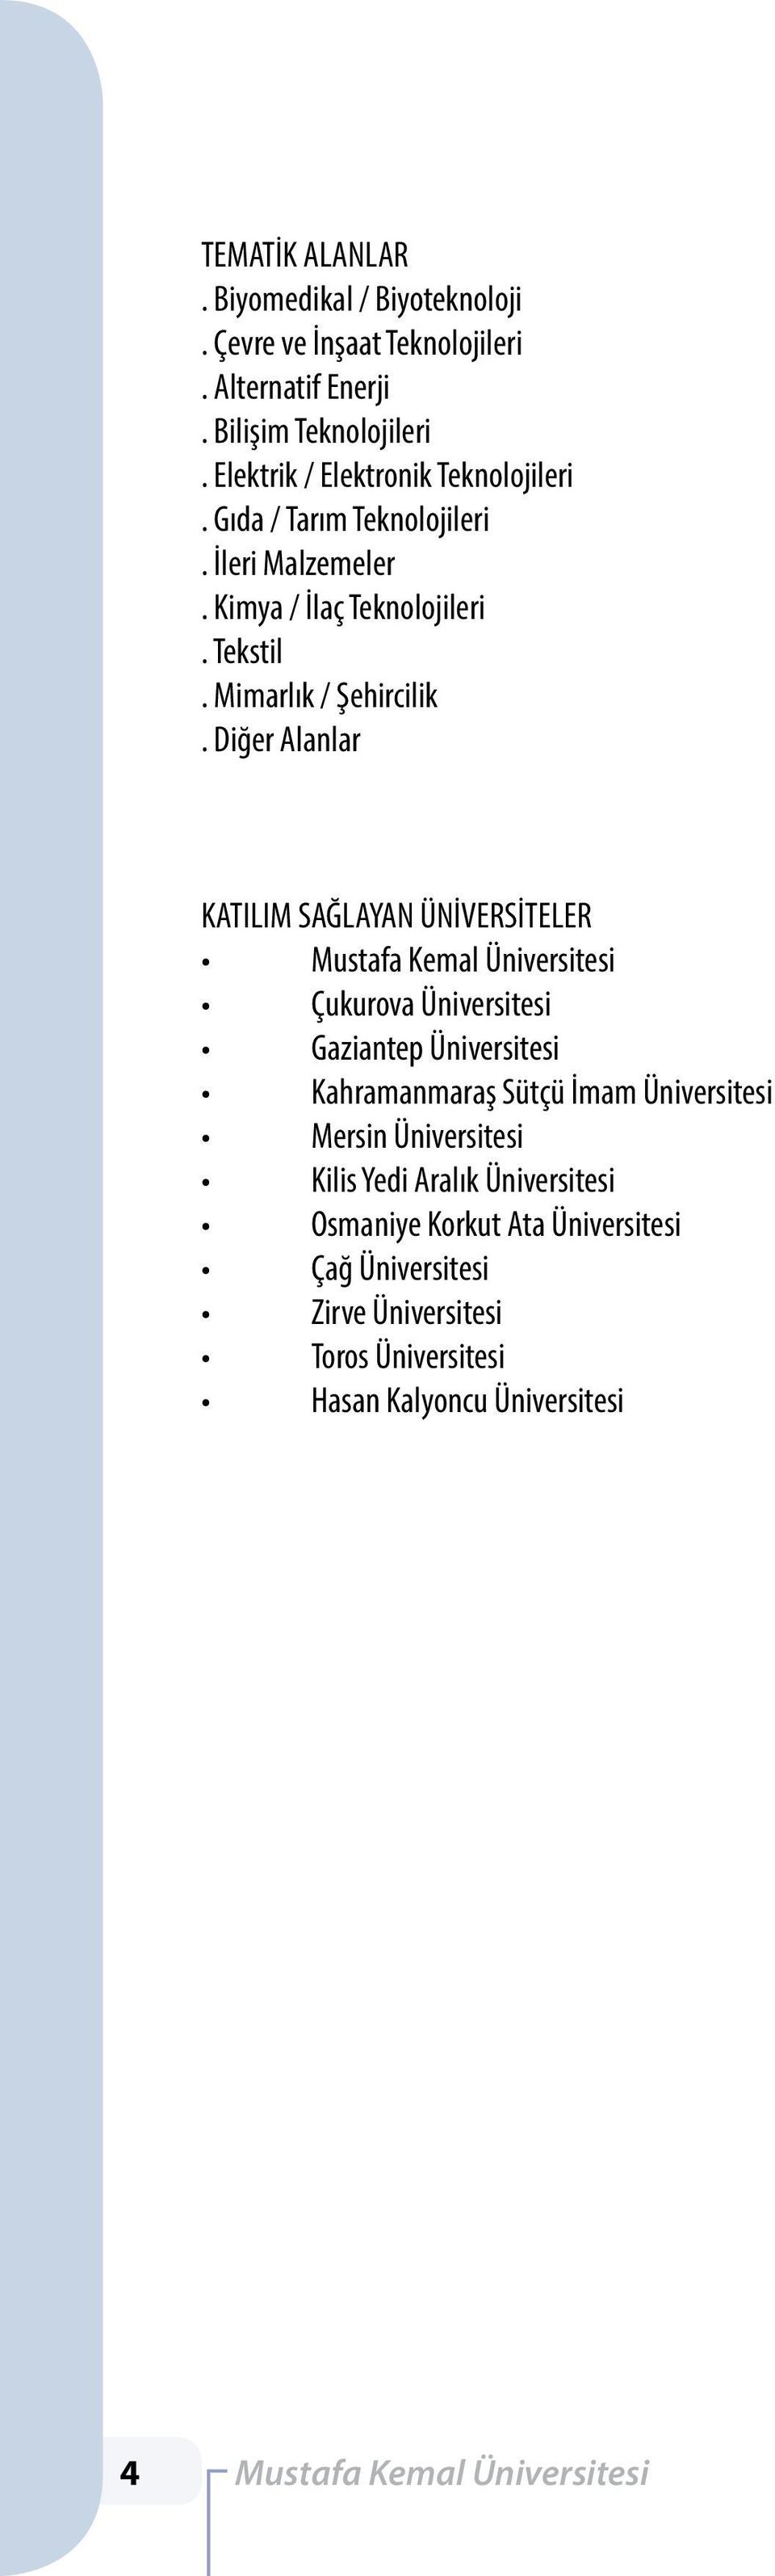 Diğer Alanlar KATILIM SAĞLAYAN ÜNİVERSİTELER Mustafa Kemal Üniversitesi Çukurova Üniversitesi Gaziantep Üniversitesi Kahramanmaraş Sütçü İmam